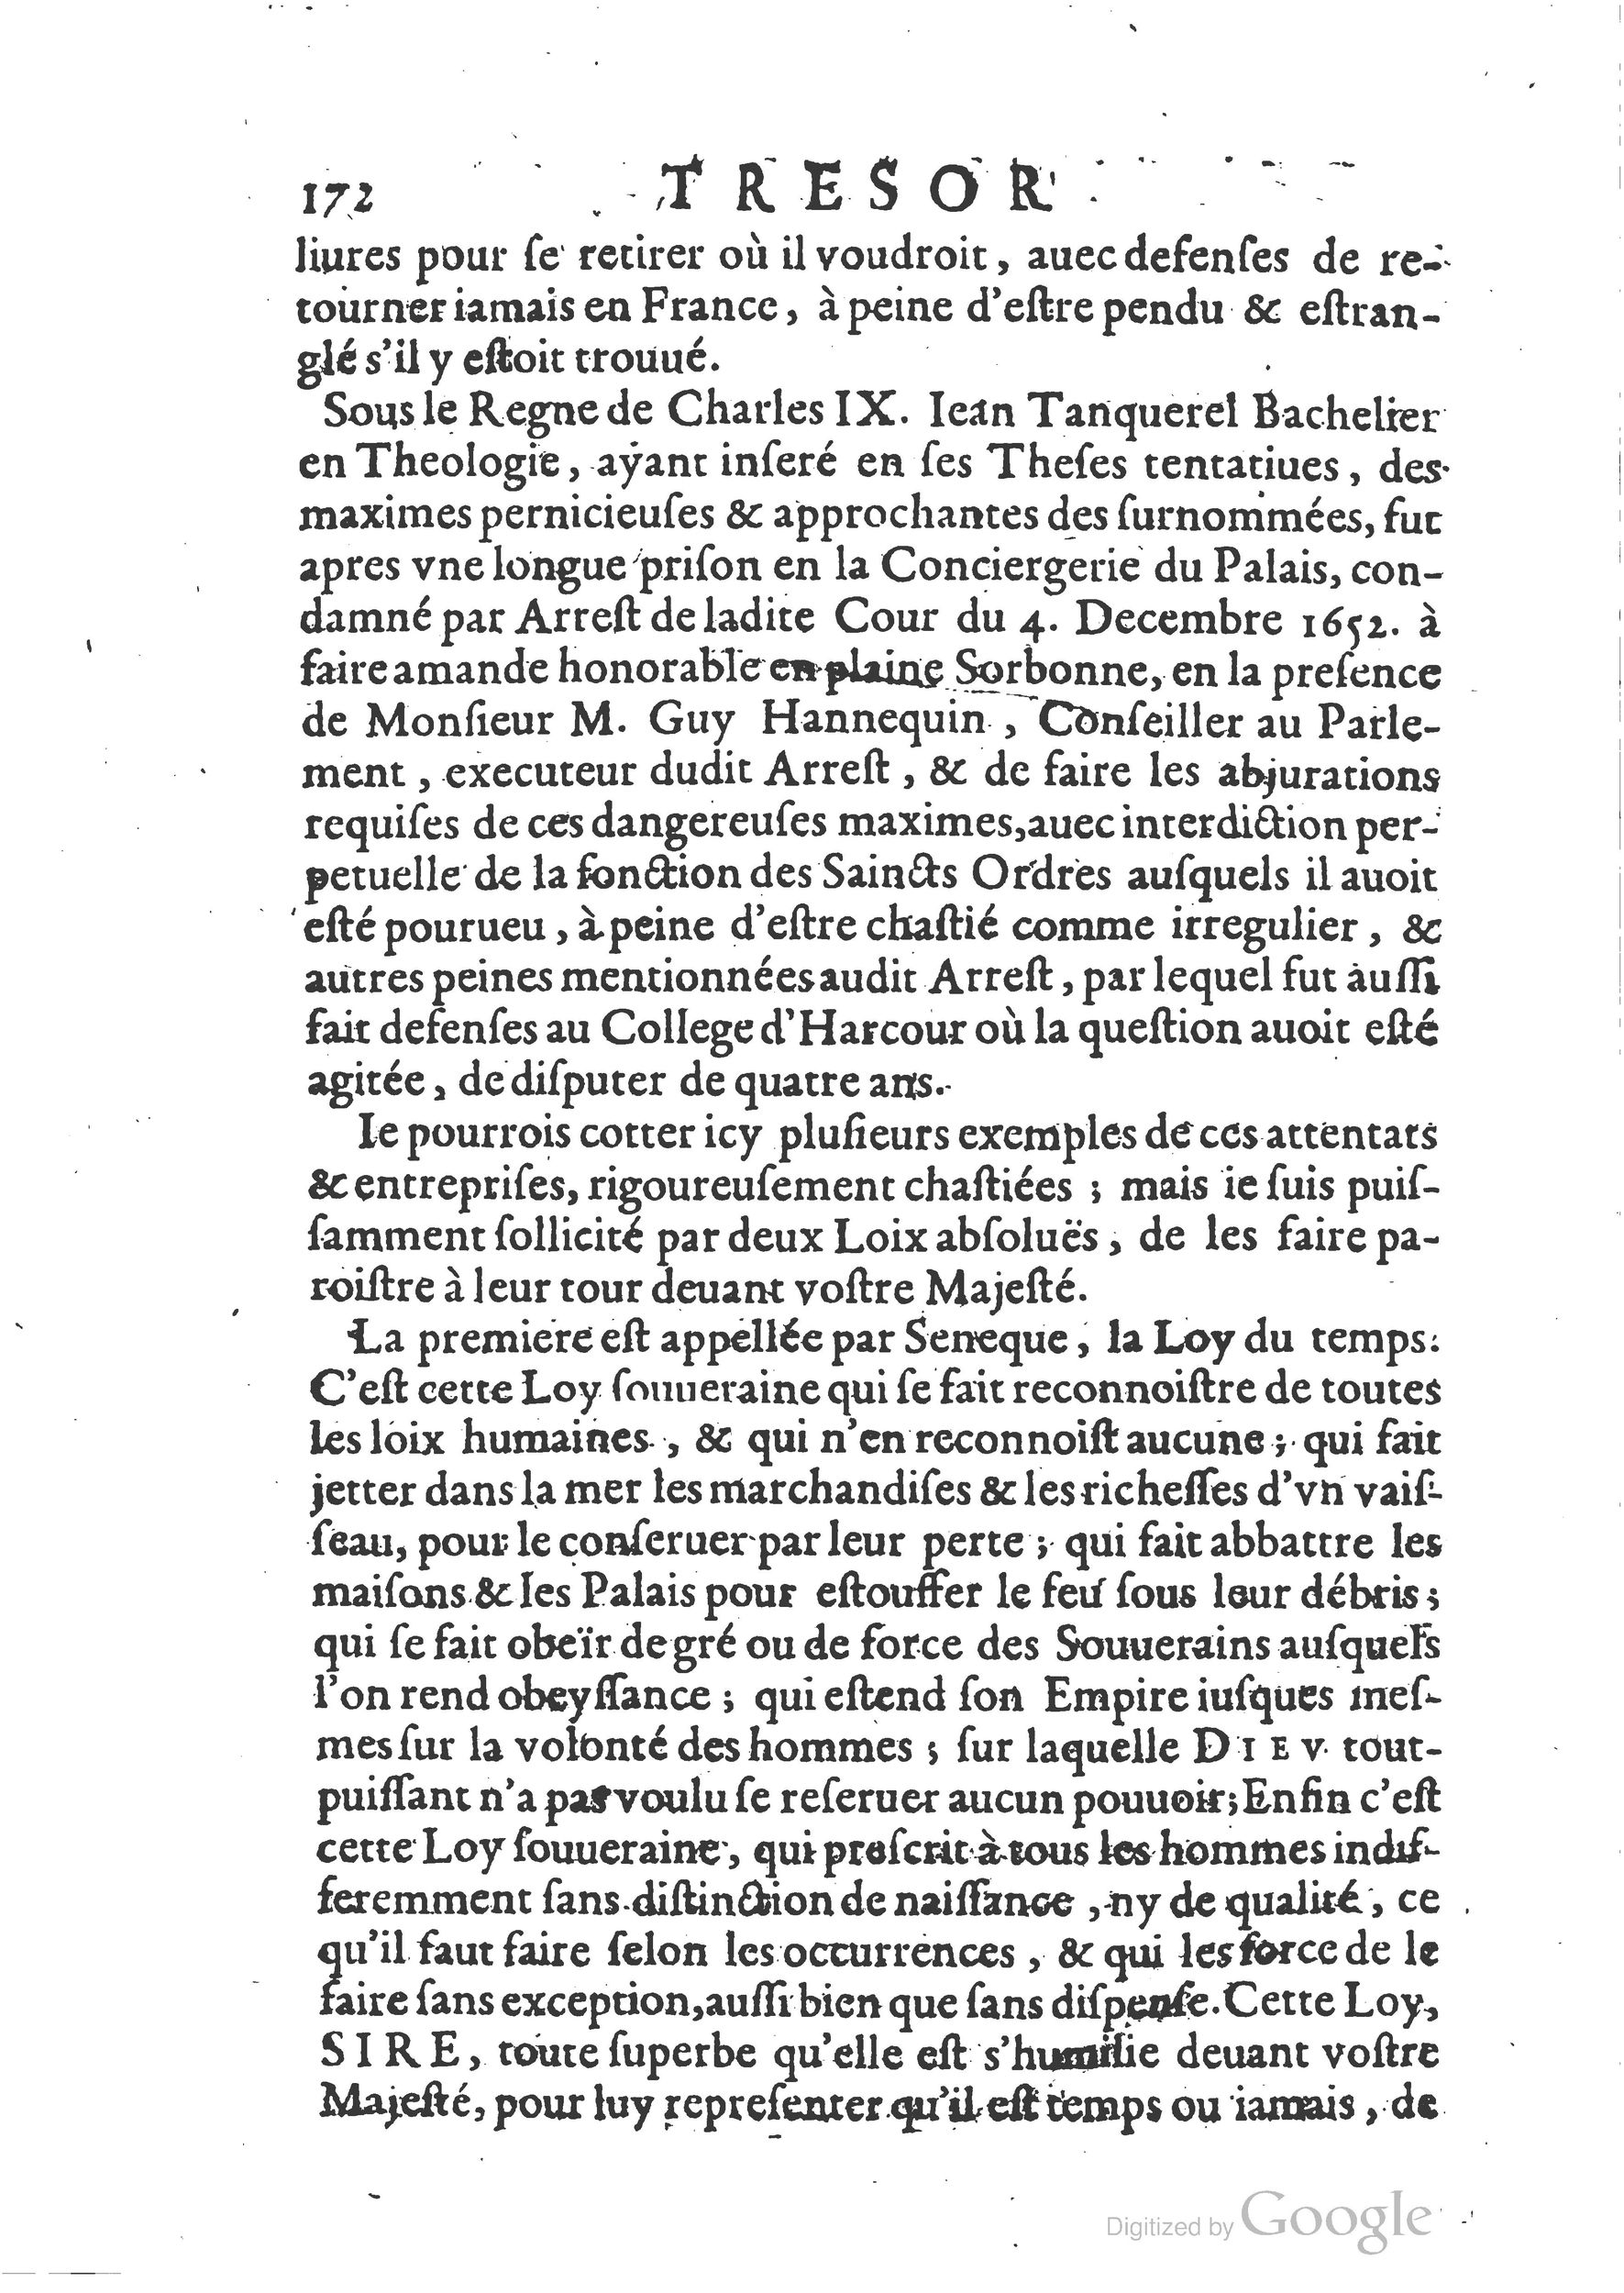 1654 Trésor des harangues, remontrances et oraisons funèbres Robin_BM Lyon_Page_411.jpg